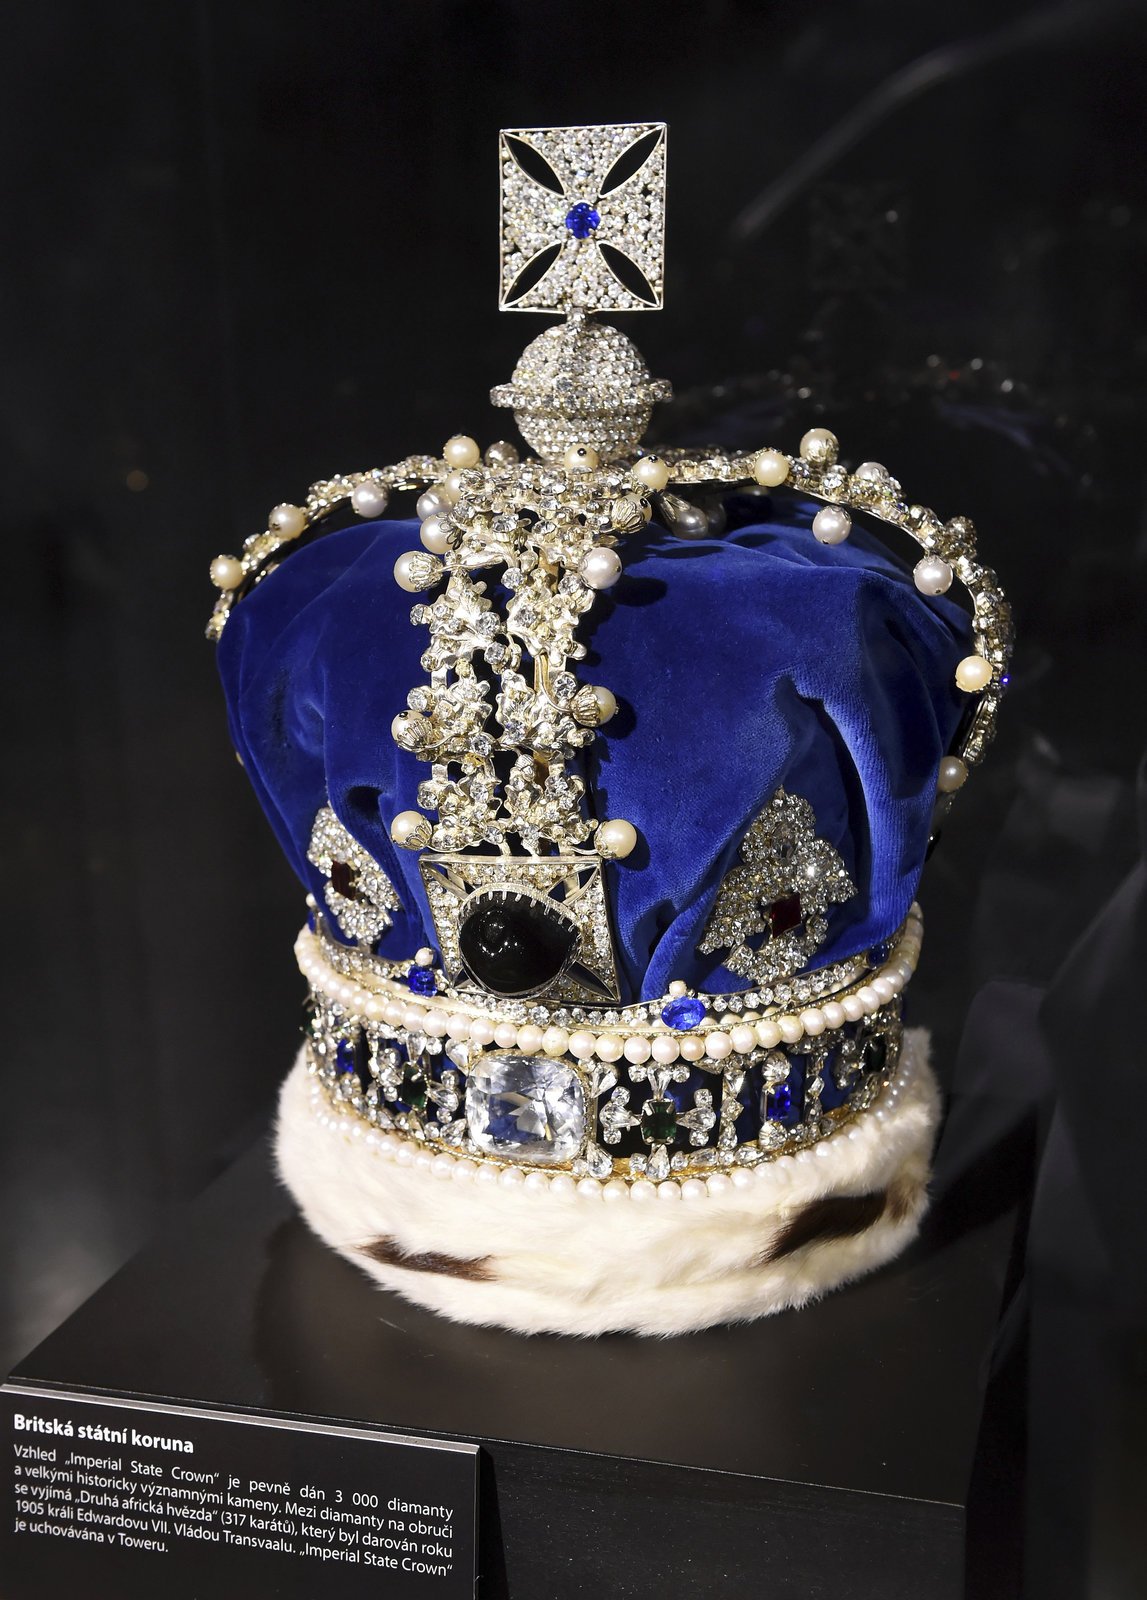 Britská státní koruna se třemi tisíci diamanty. Diamant »Druhá africká hvězda« má 317 karátů. Originál je uložen v Toweru. Nyní patří na hlavu královně Alžbětě II. (90).